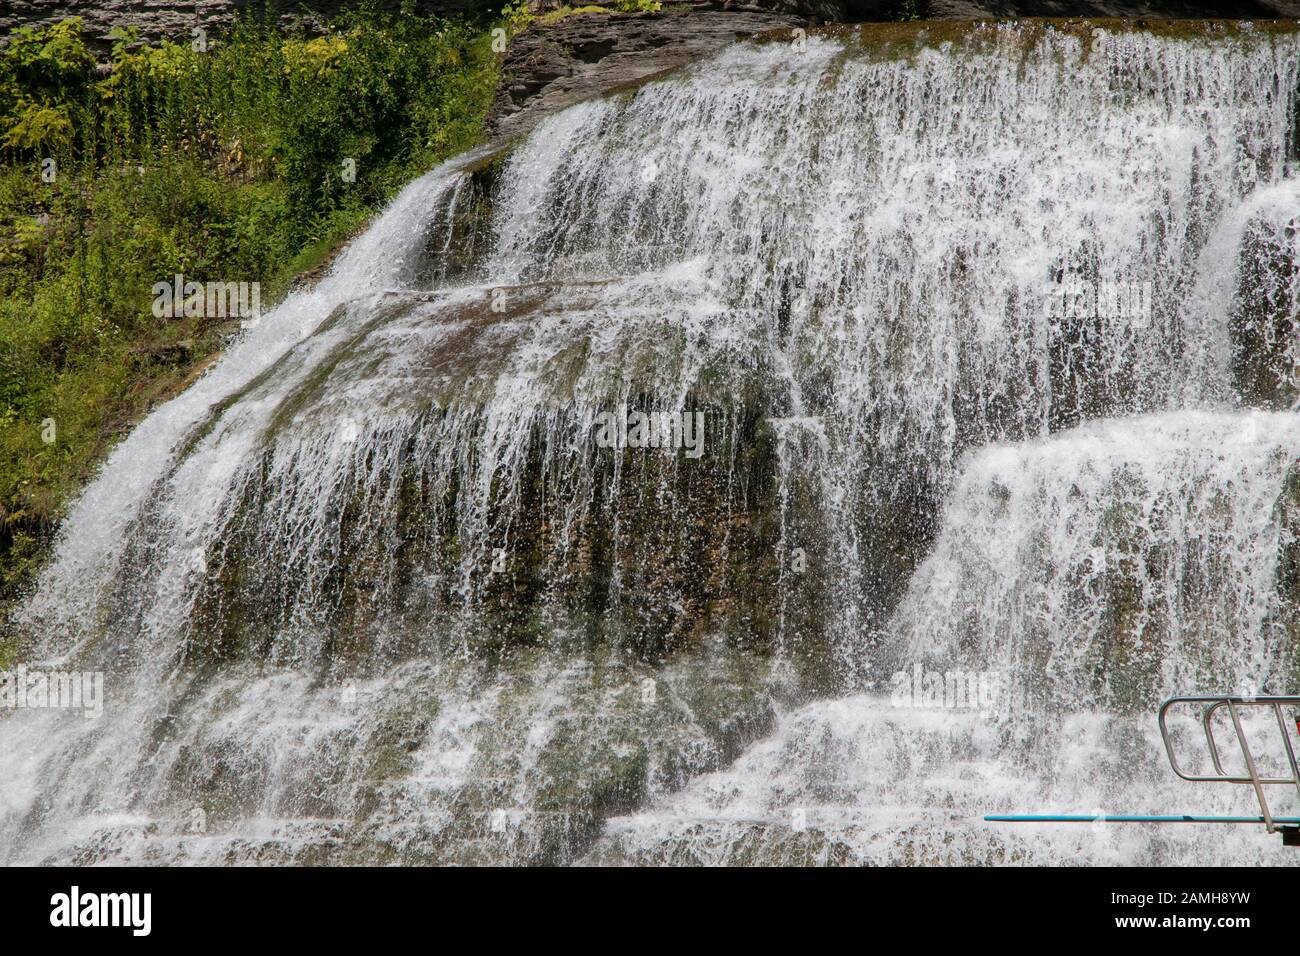 Agosto, 2019 - Ithaca, NY, EE.UU.,: Tablero de buceo y las cataratas Inferiores en la zona de natación, Parque Estatal Robert H. Treman, Finger Lakes Foto de stock